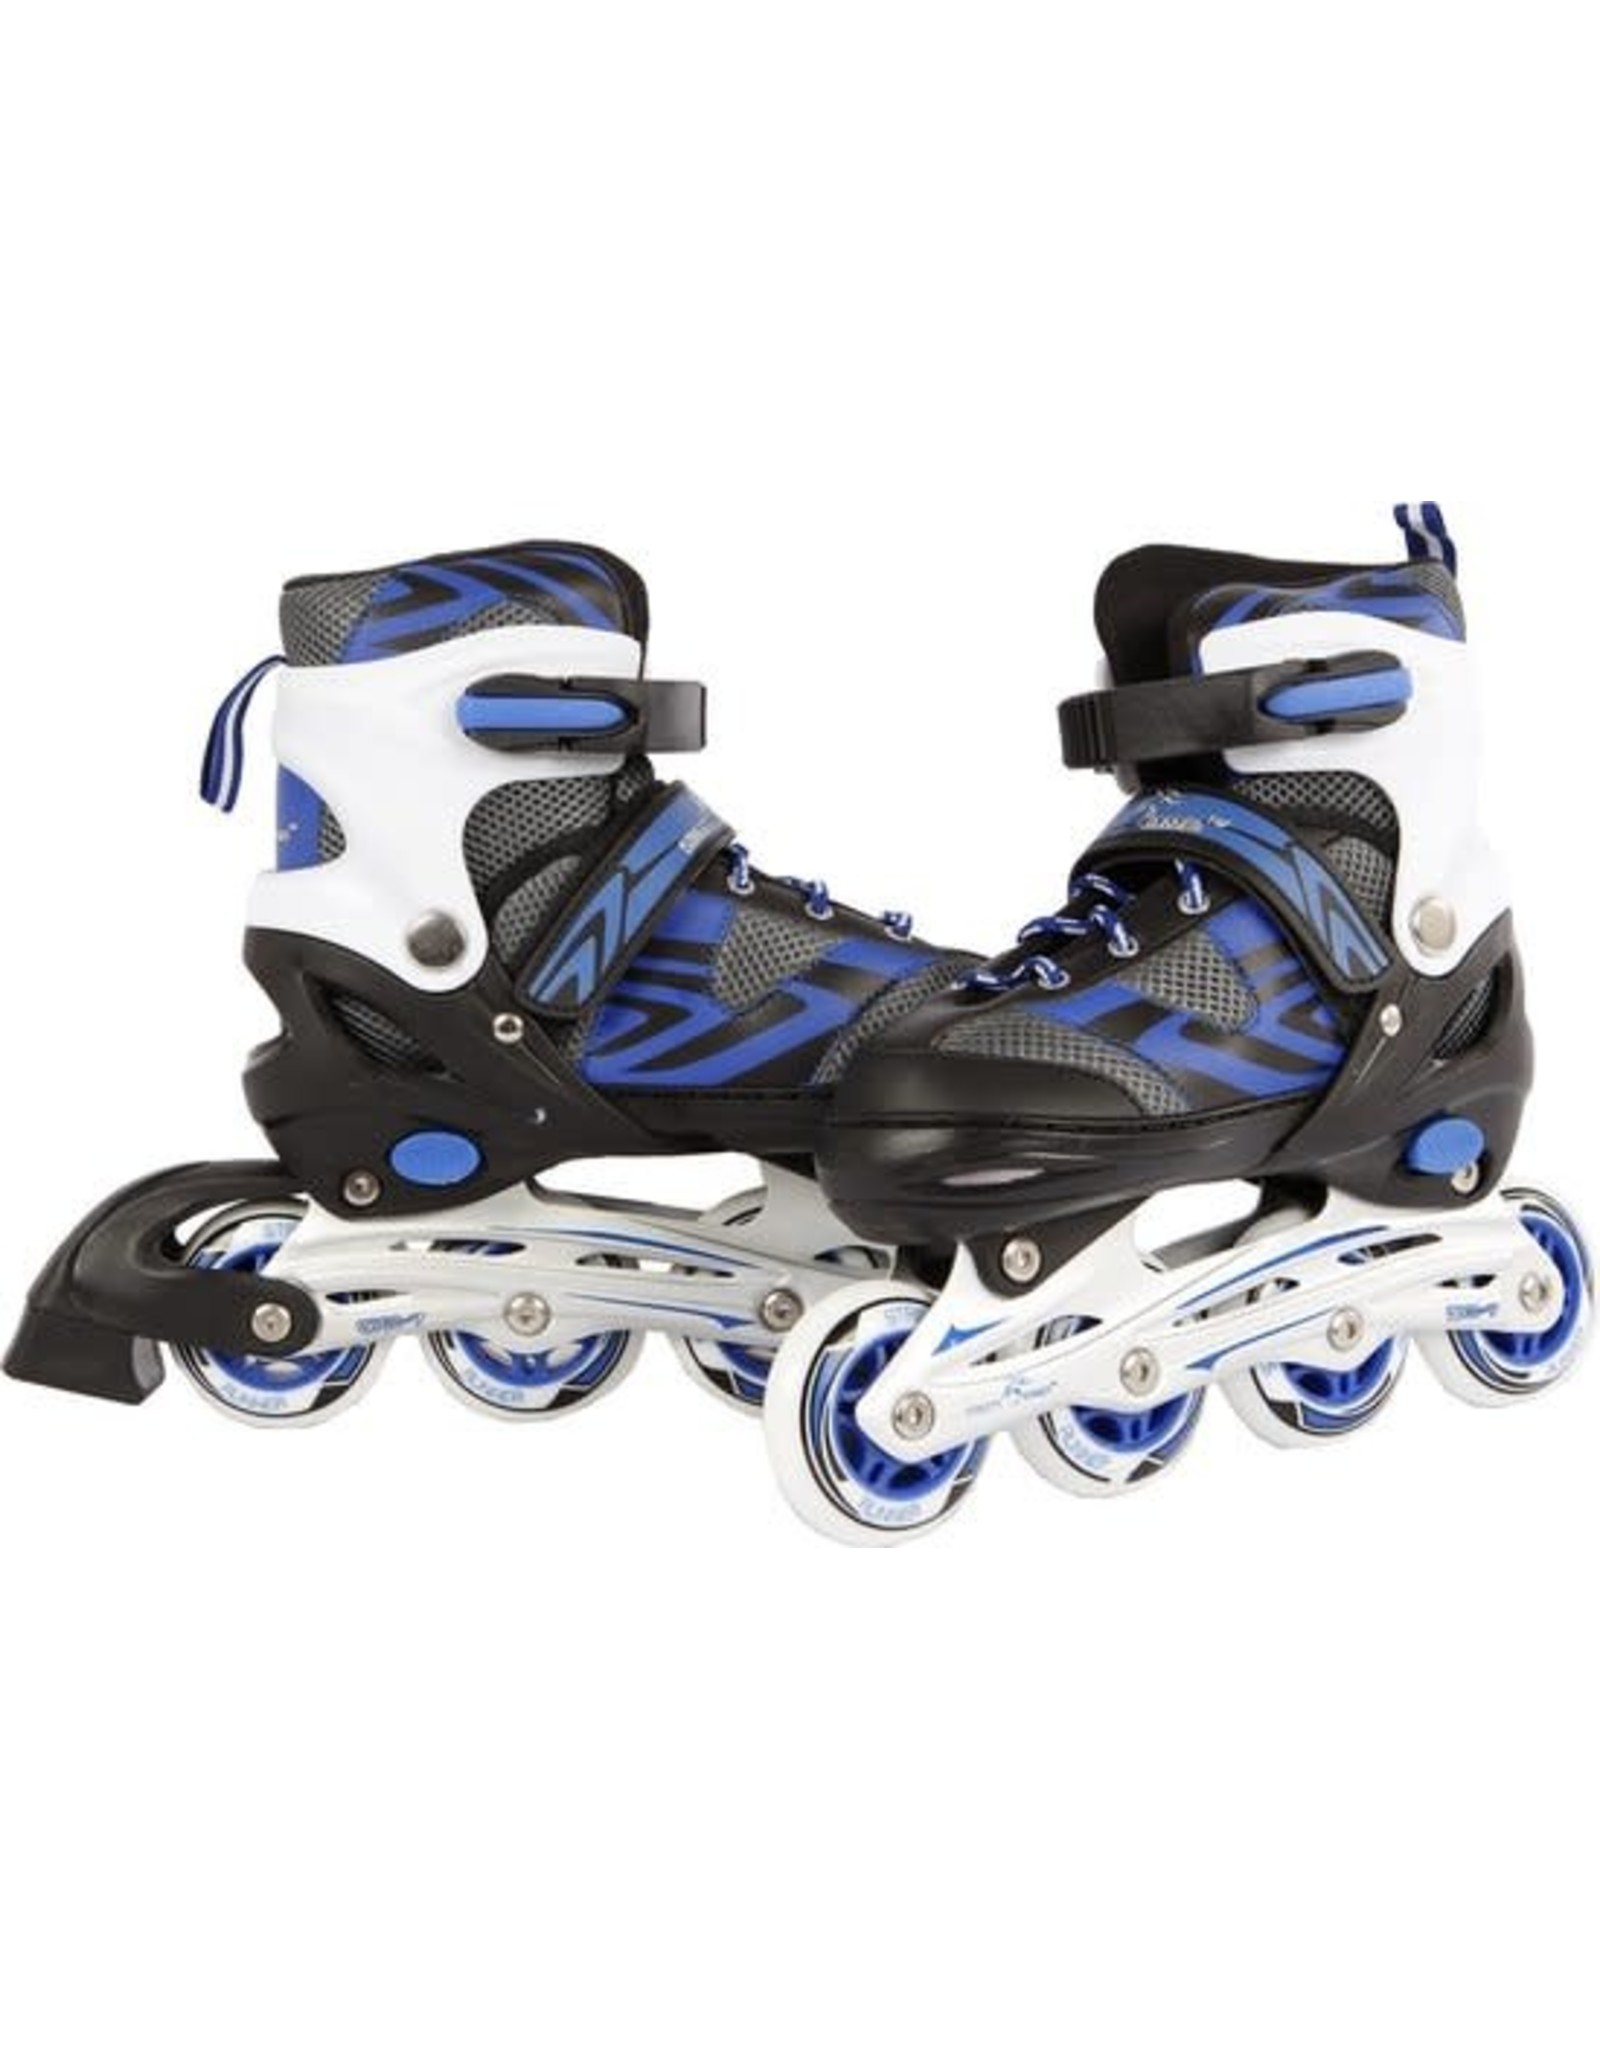 STREET RIDER Inline skates - maat 31-34 - blauw/zwart